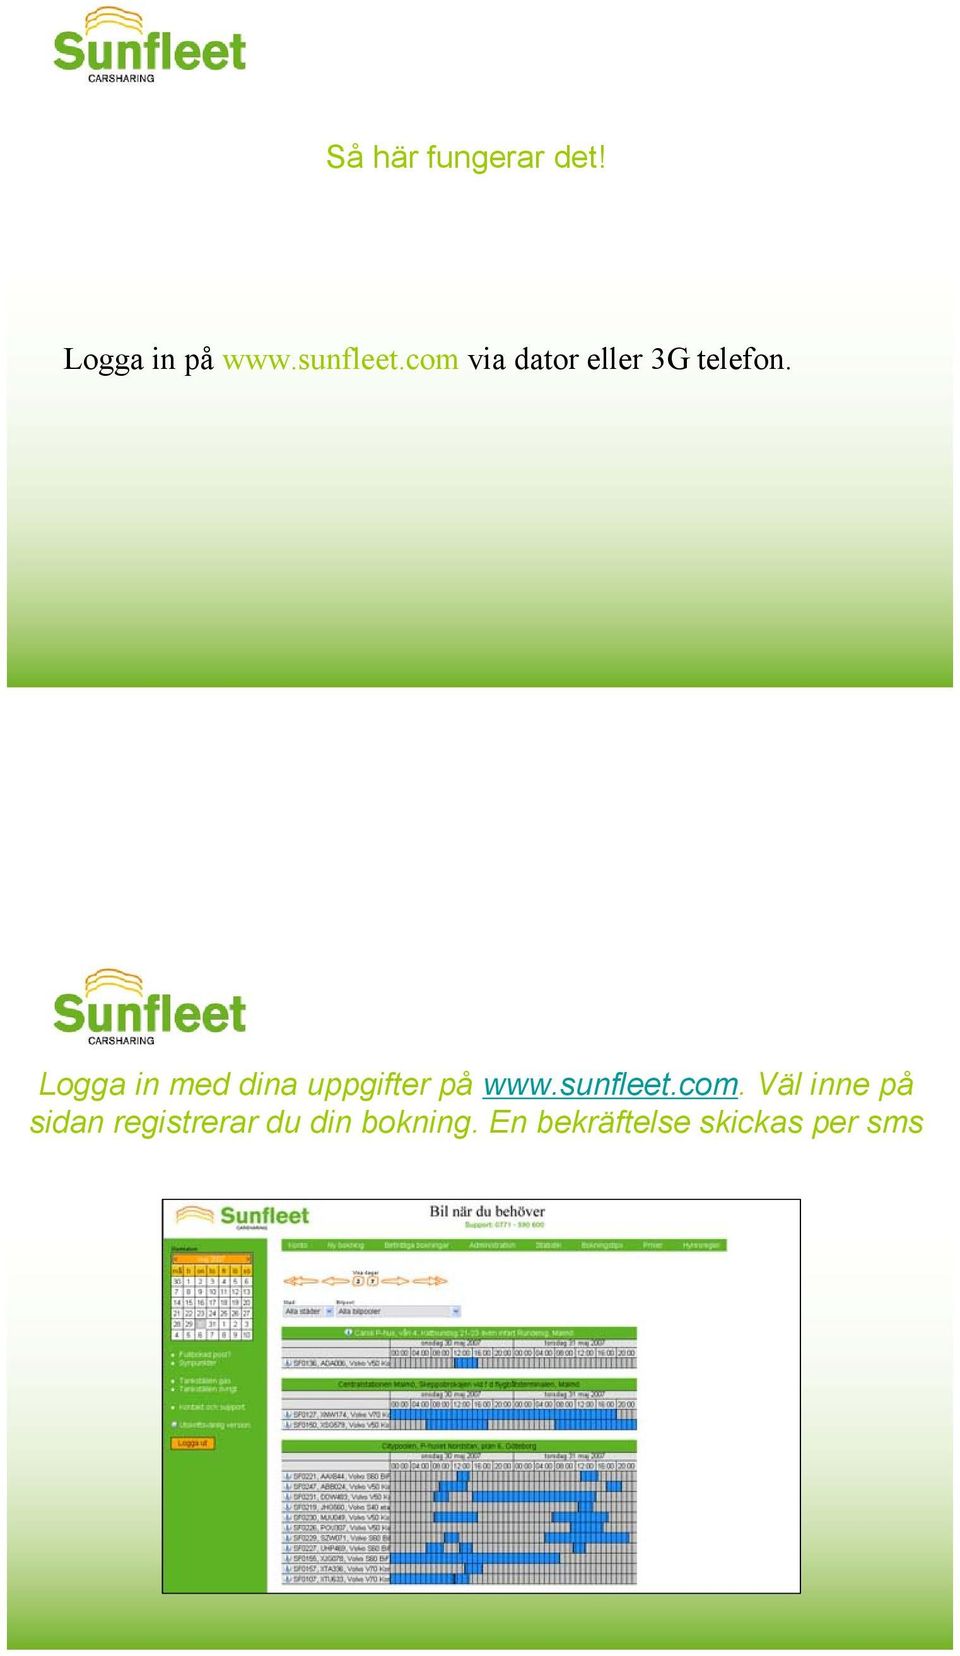 Logga in med dina uppgifter på www.sunfleet.com.